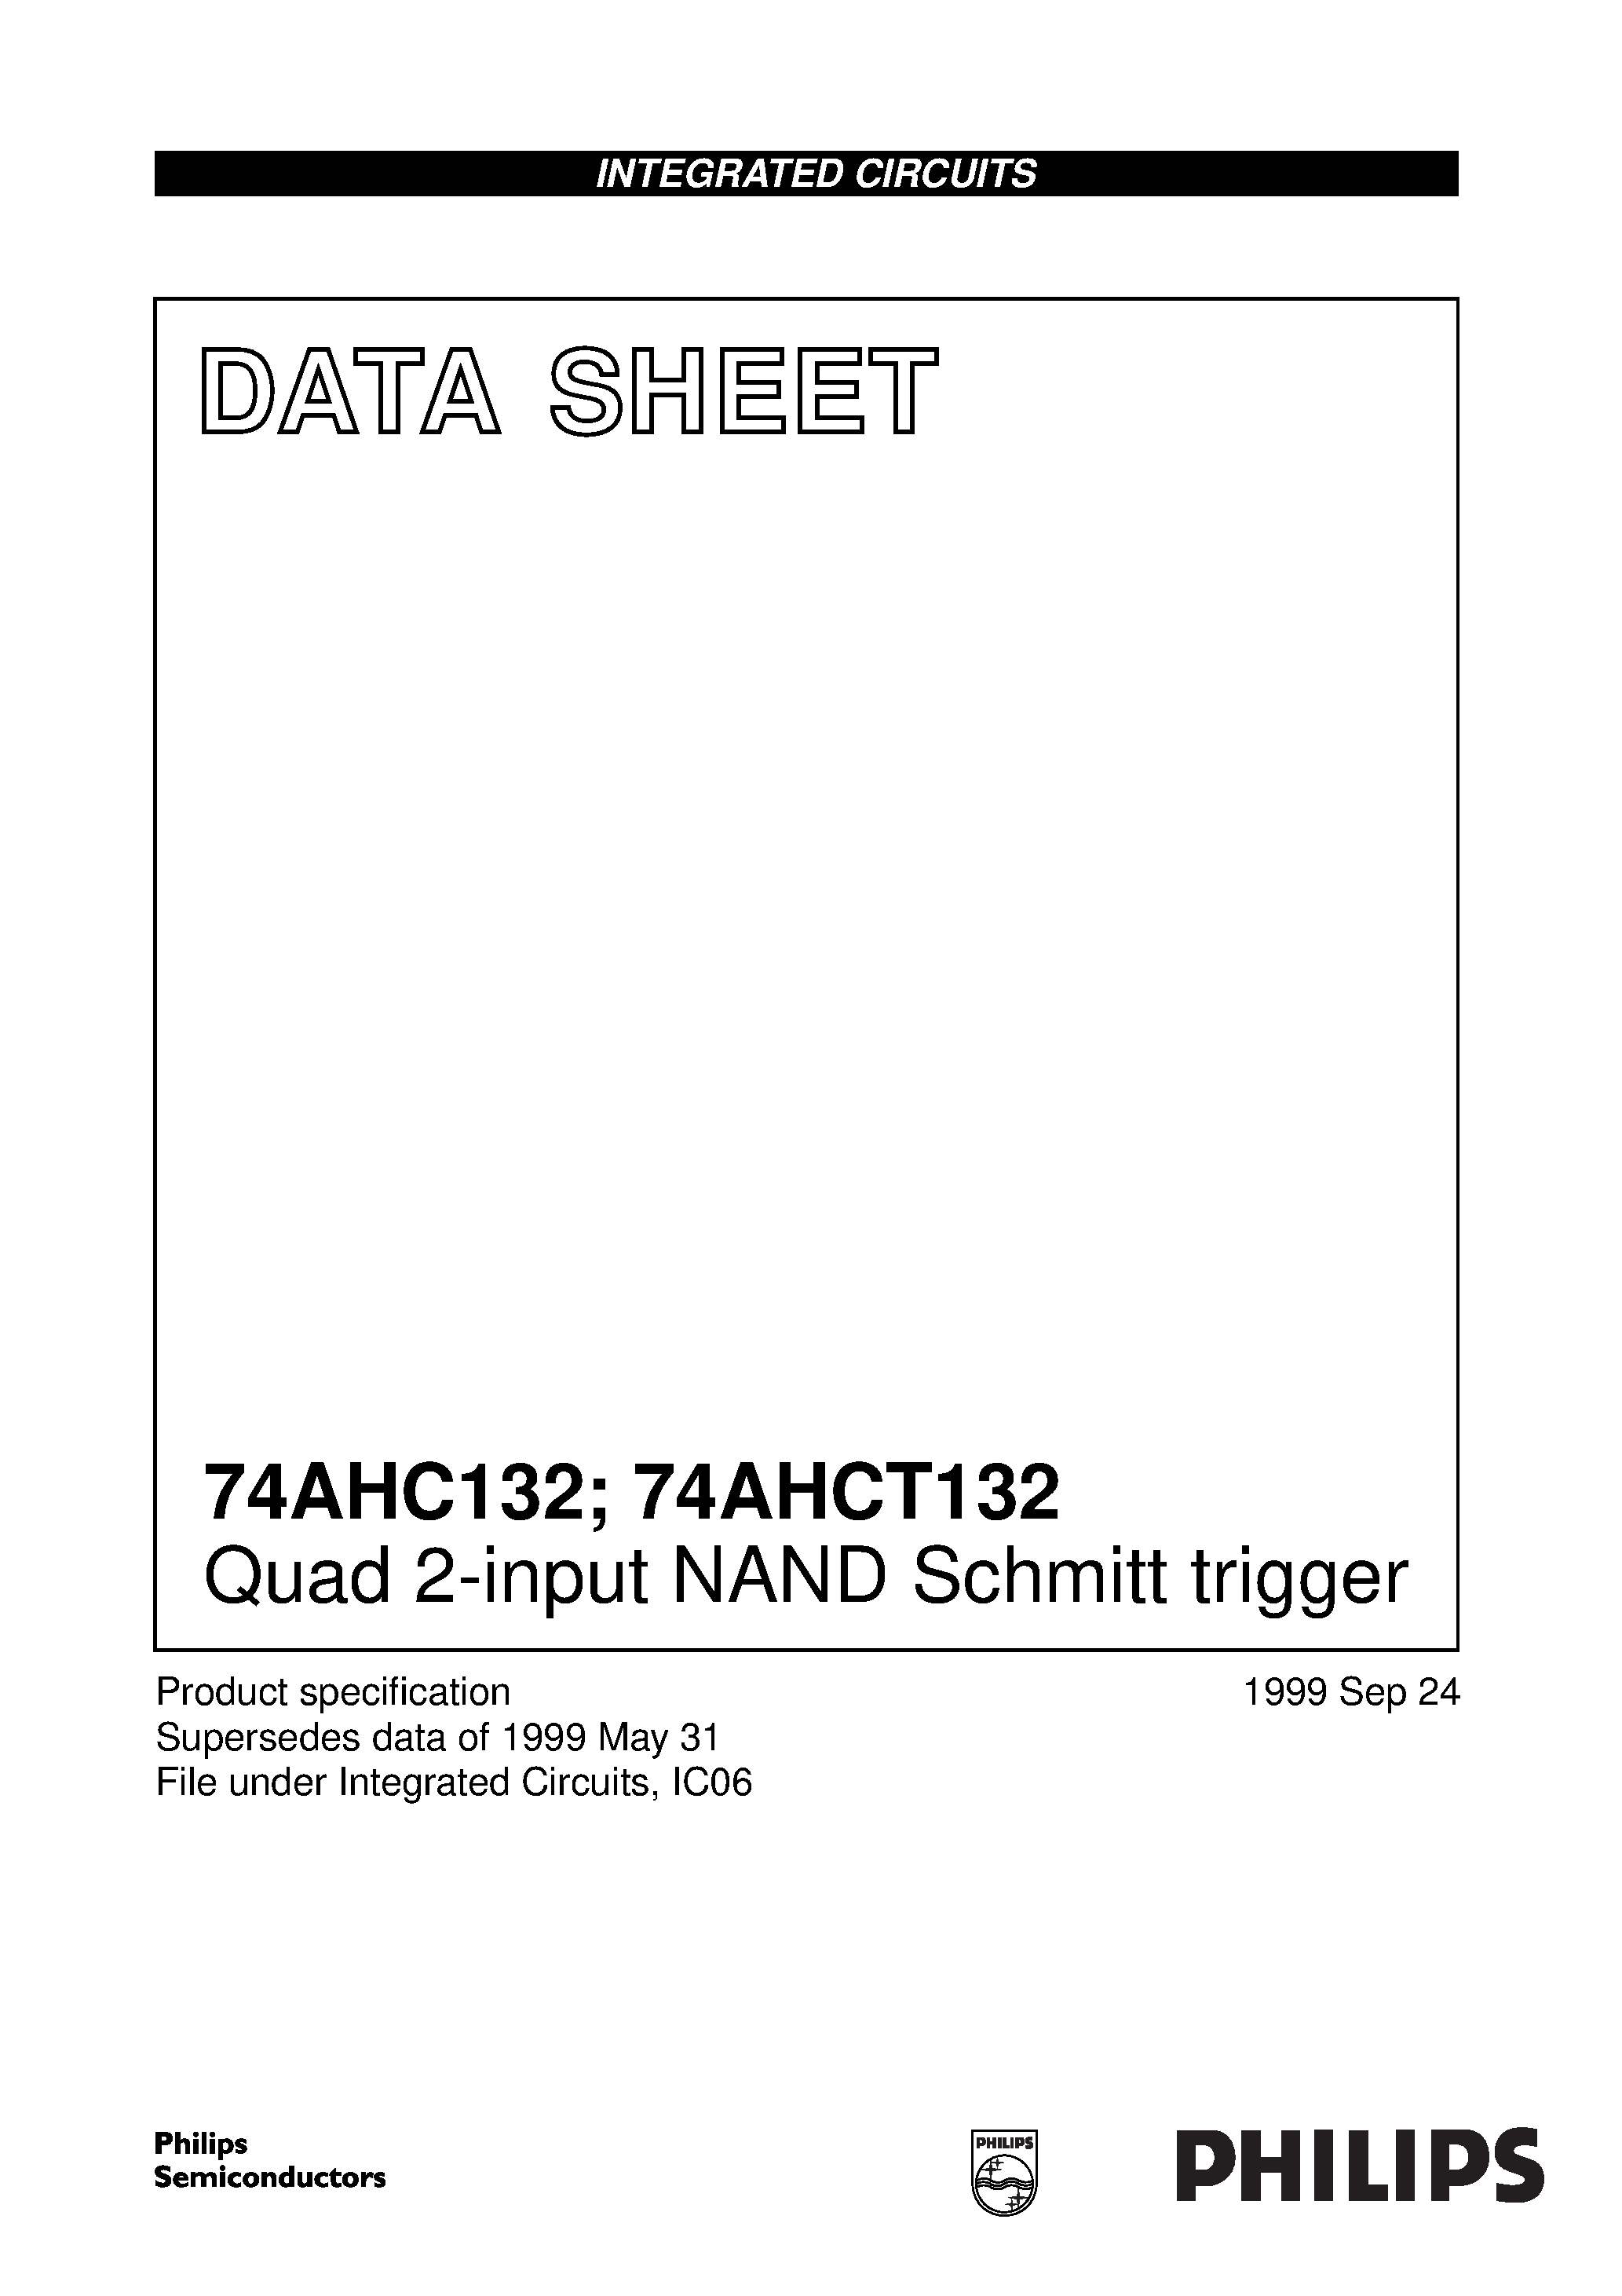 Datasheet 74AHC132D - Quad 2-input NAND Schmitt trigger page 1